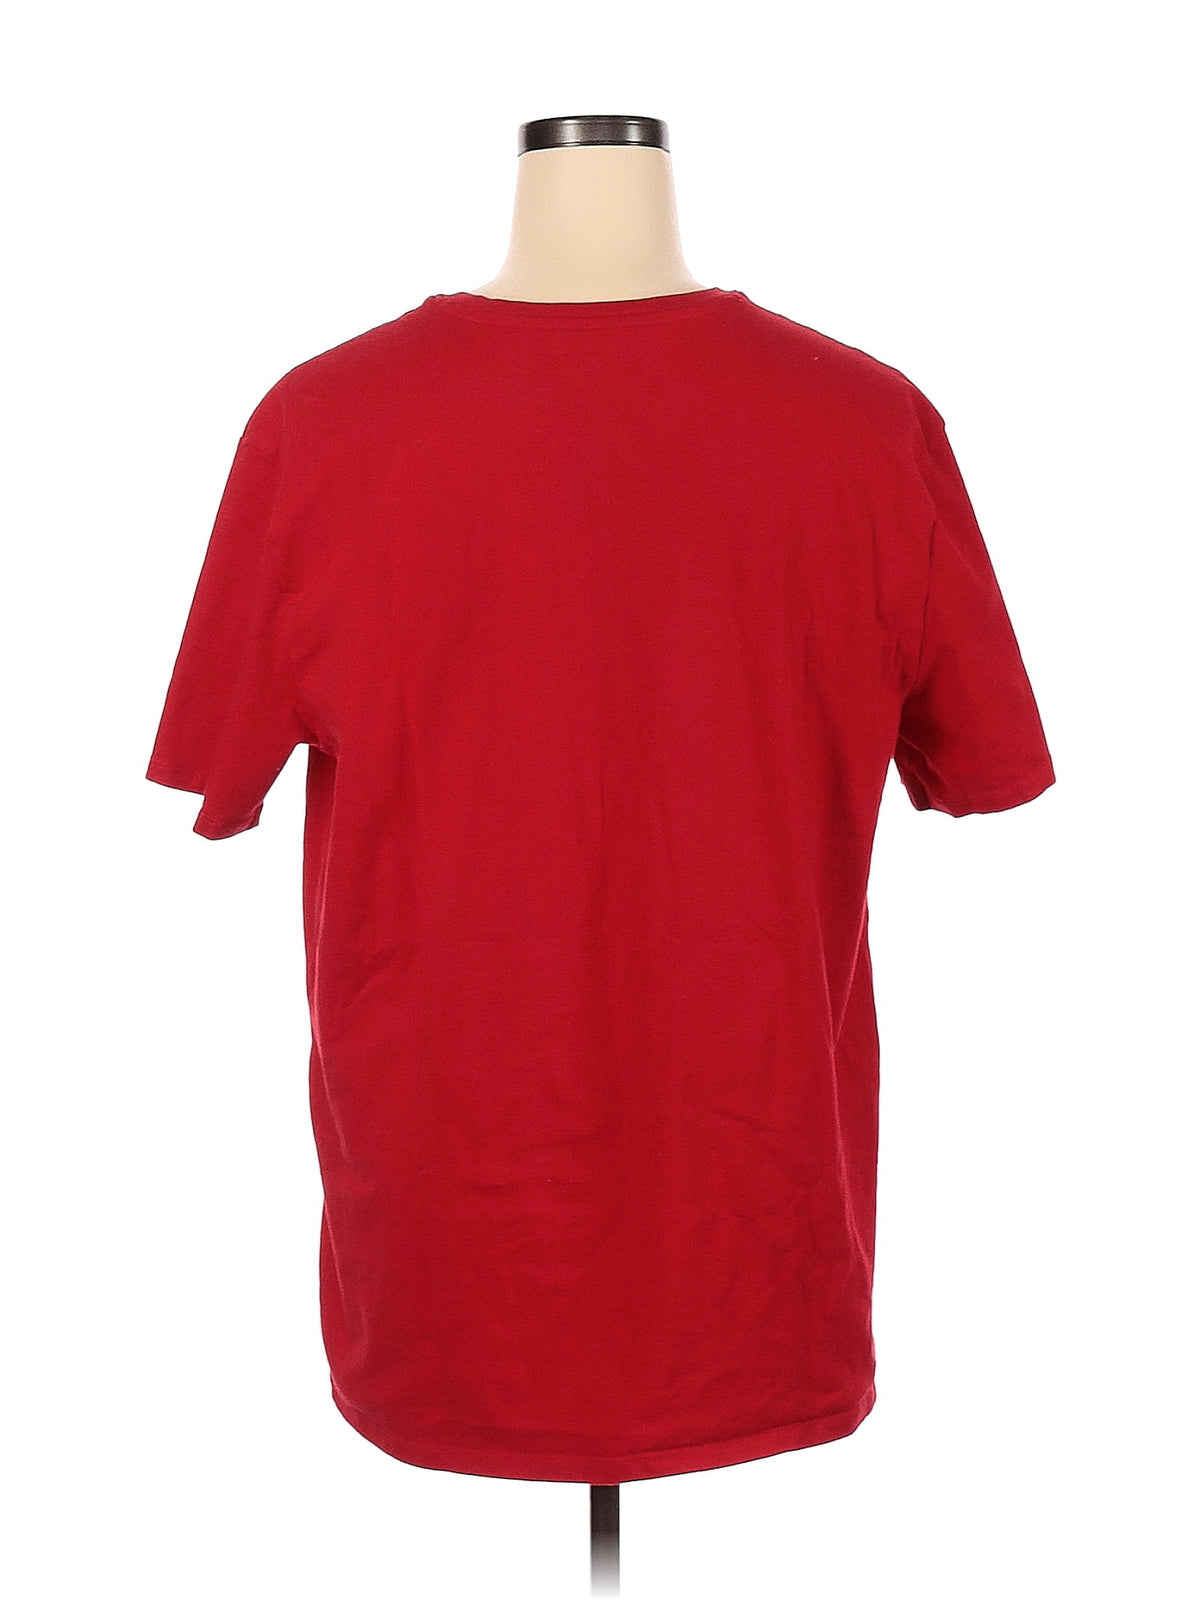 T Shirt size - XL